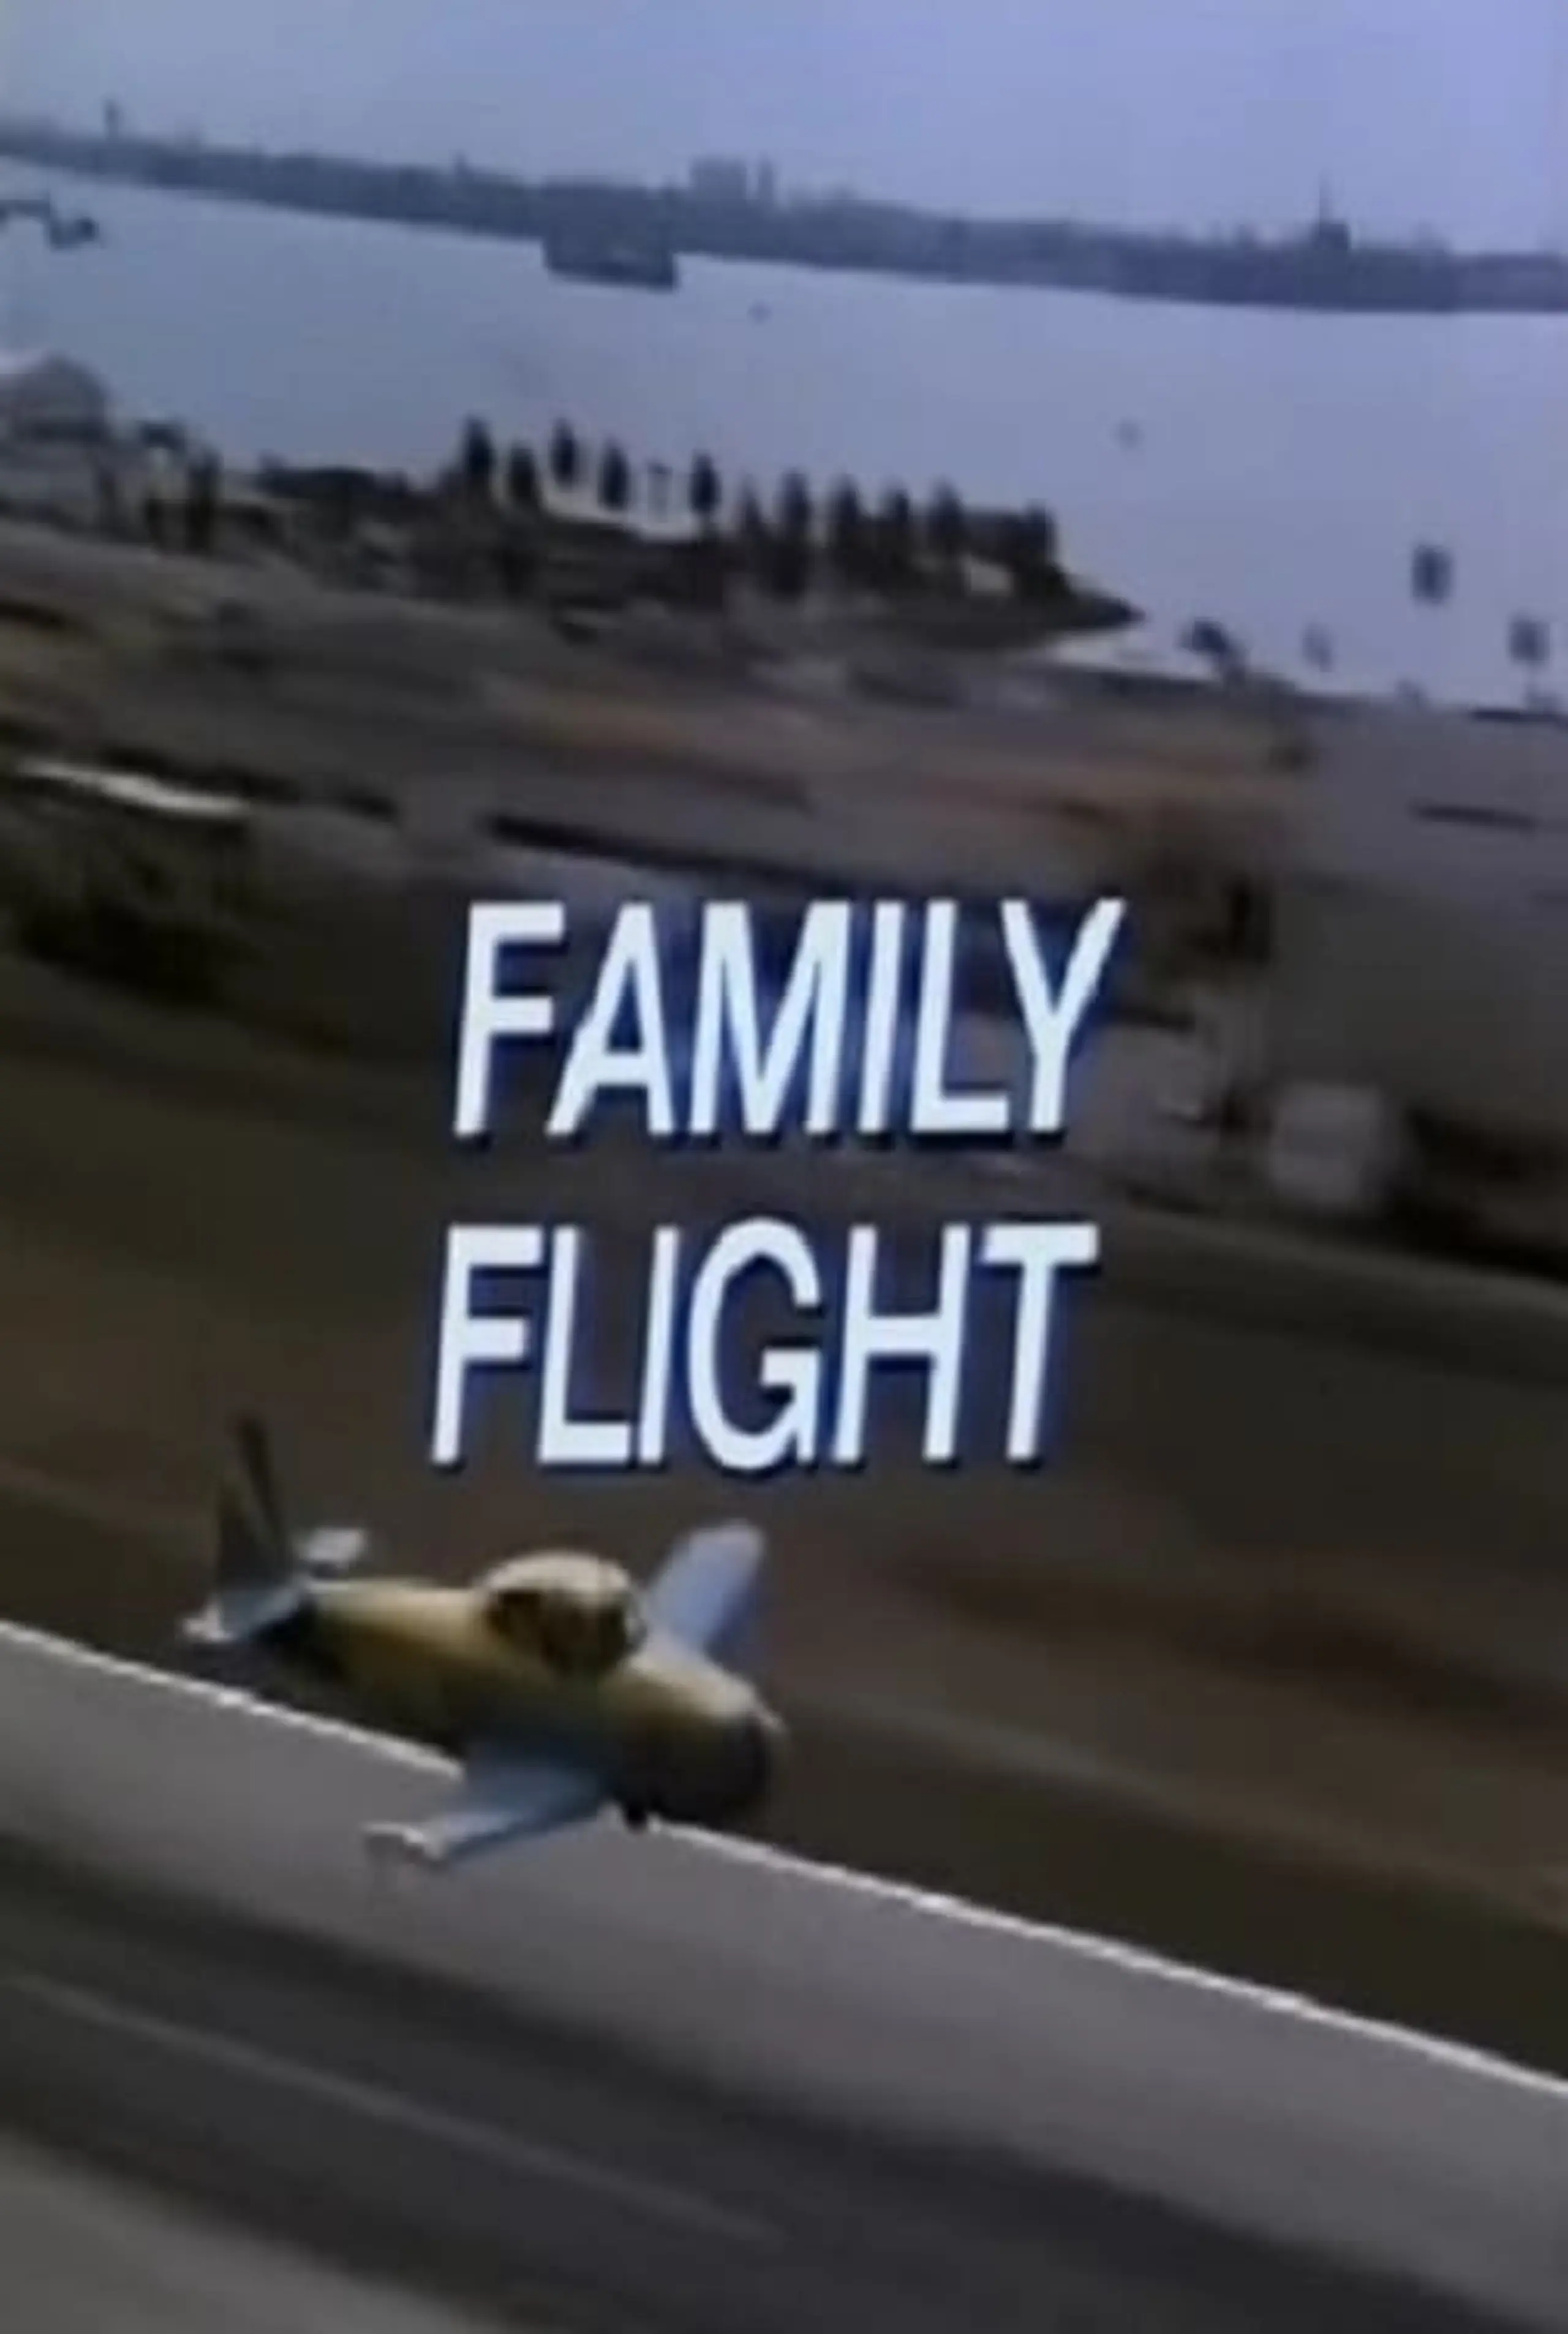 Family Flight